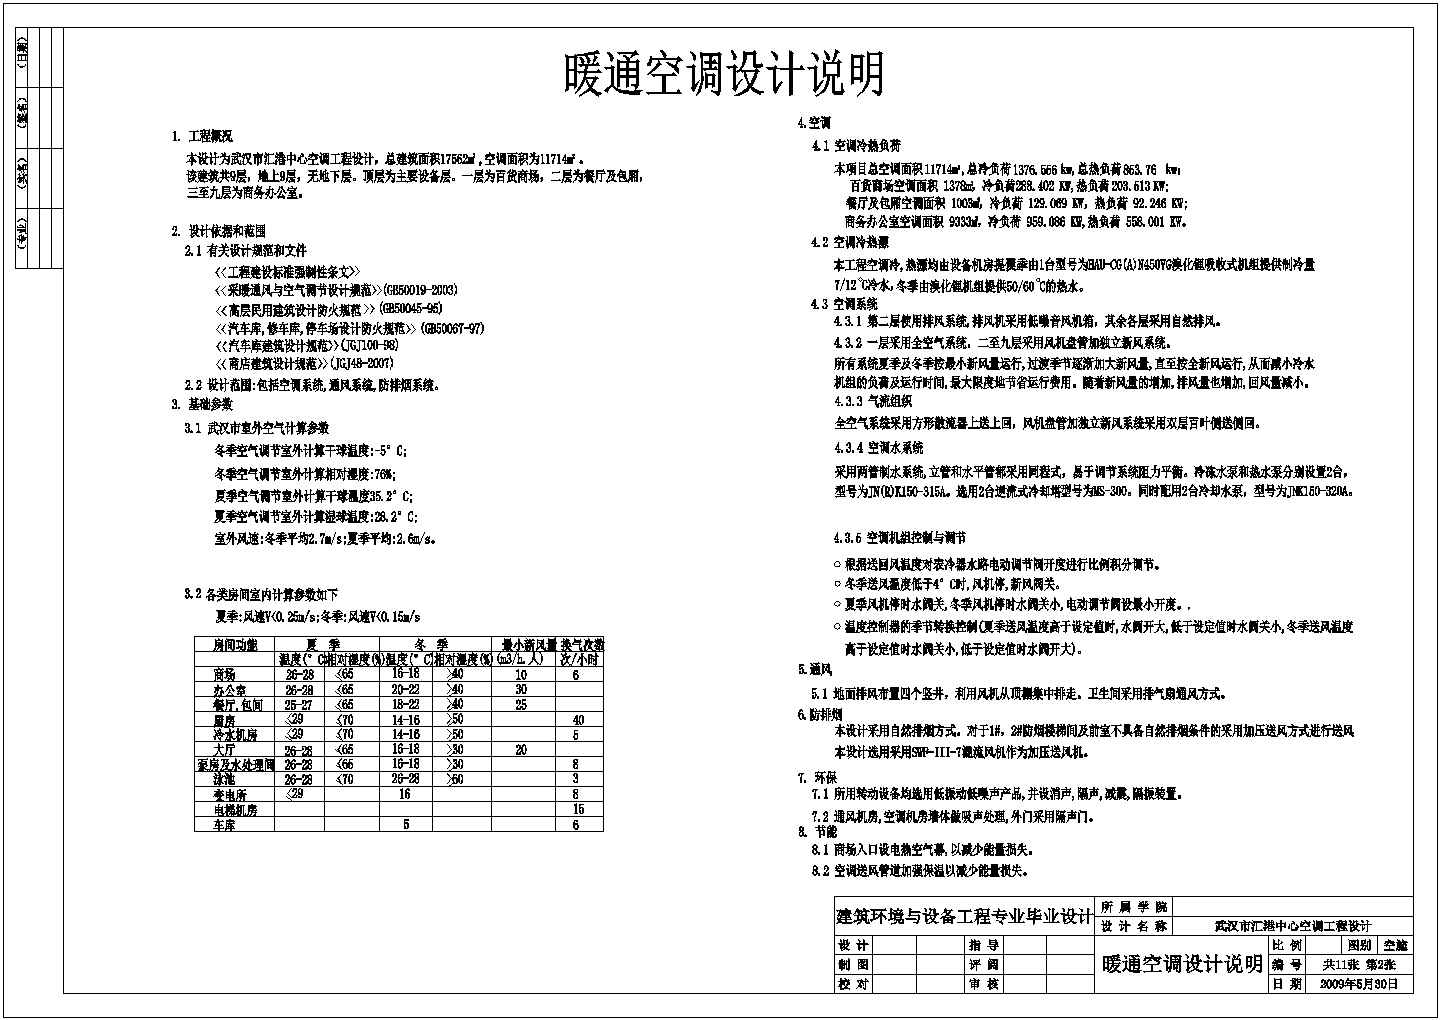 武汉市汇港中心空调工程施工设计cad图纸(含空调水系统图)